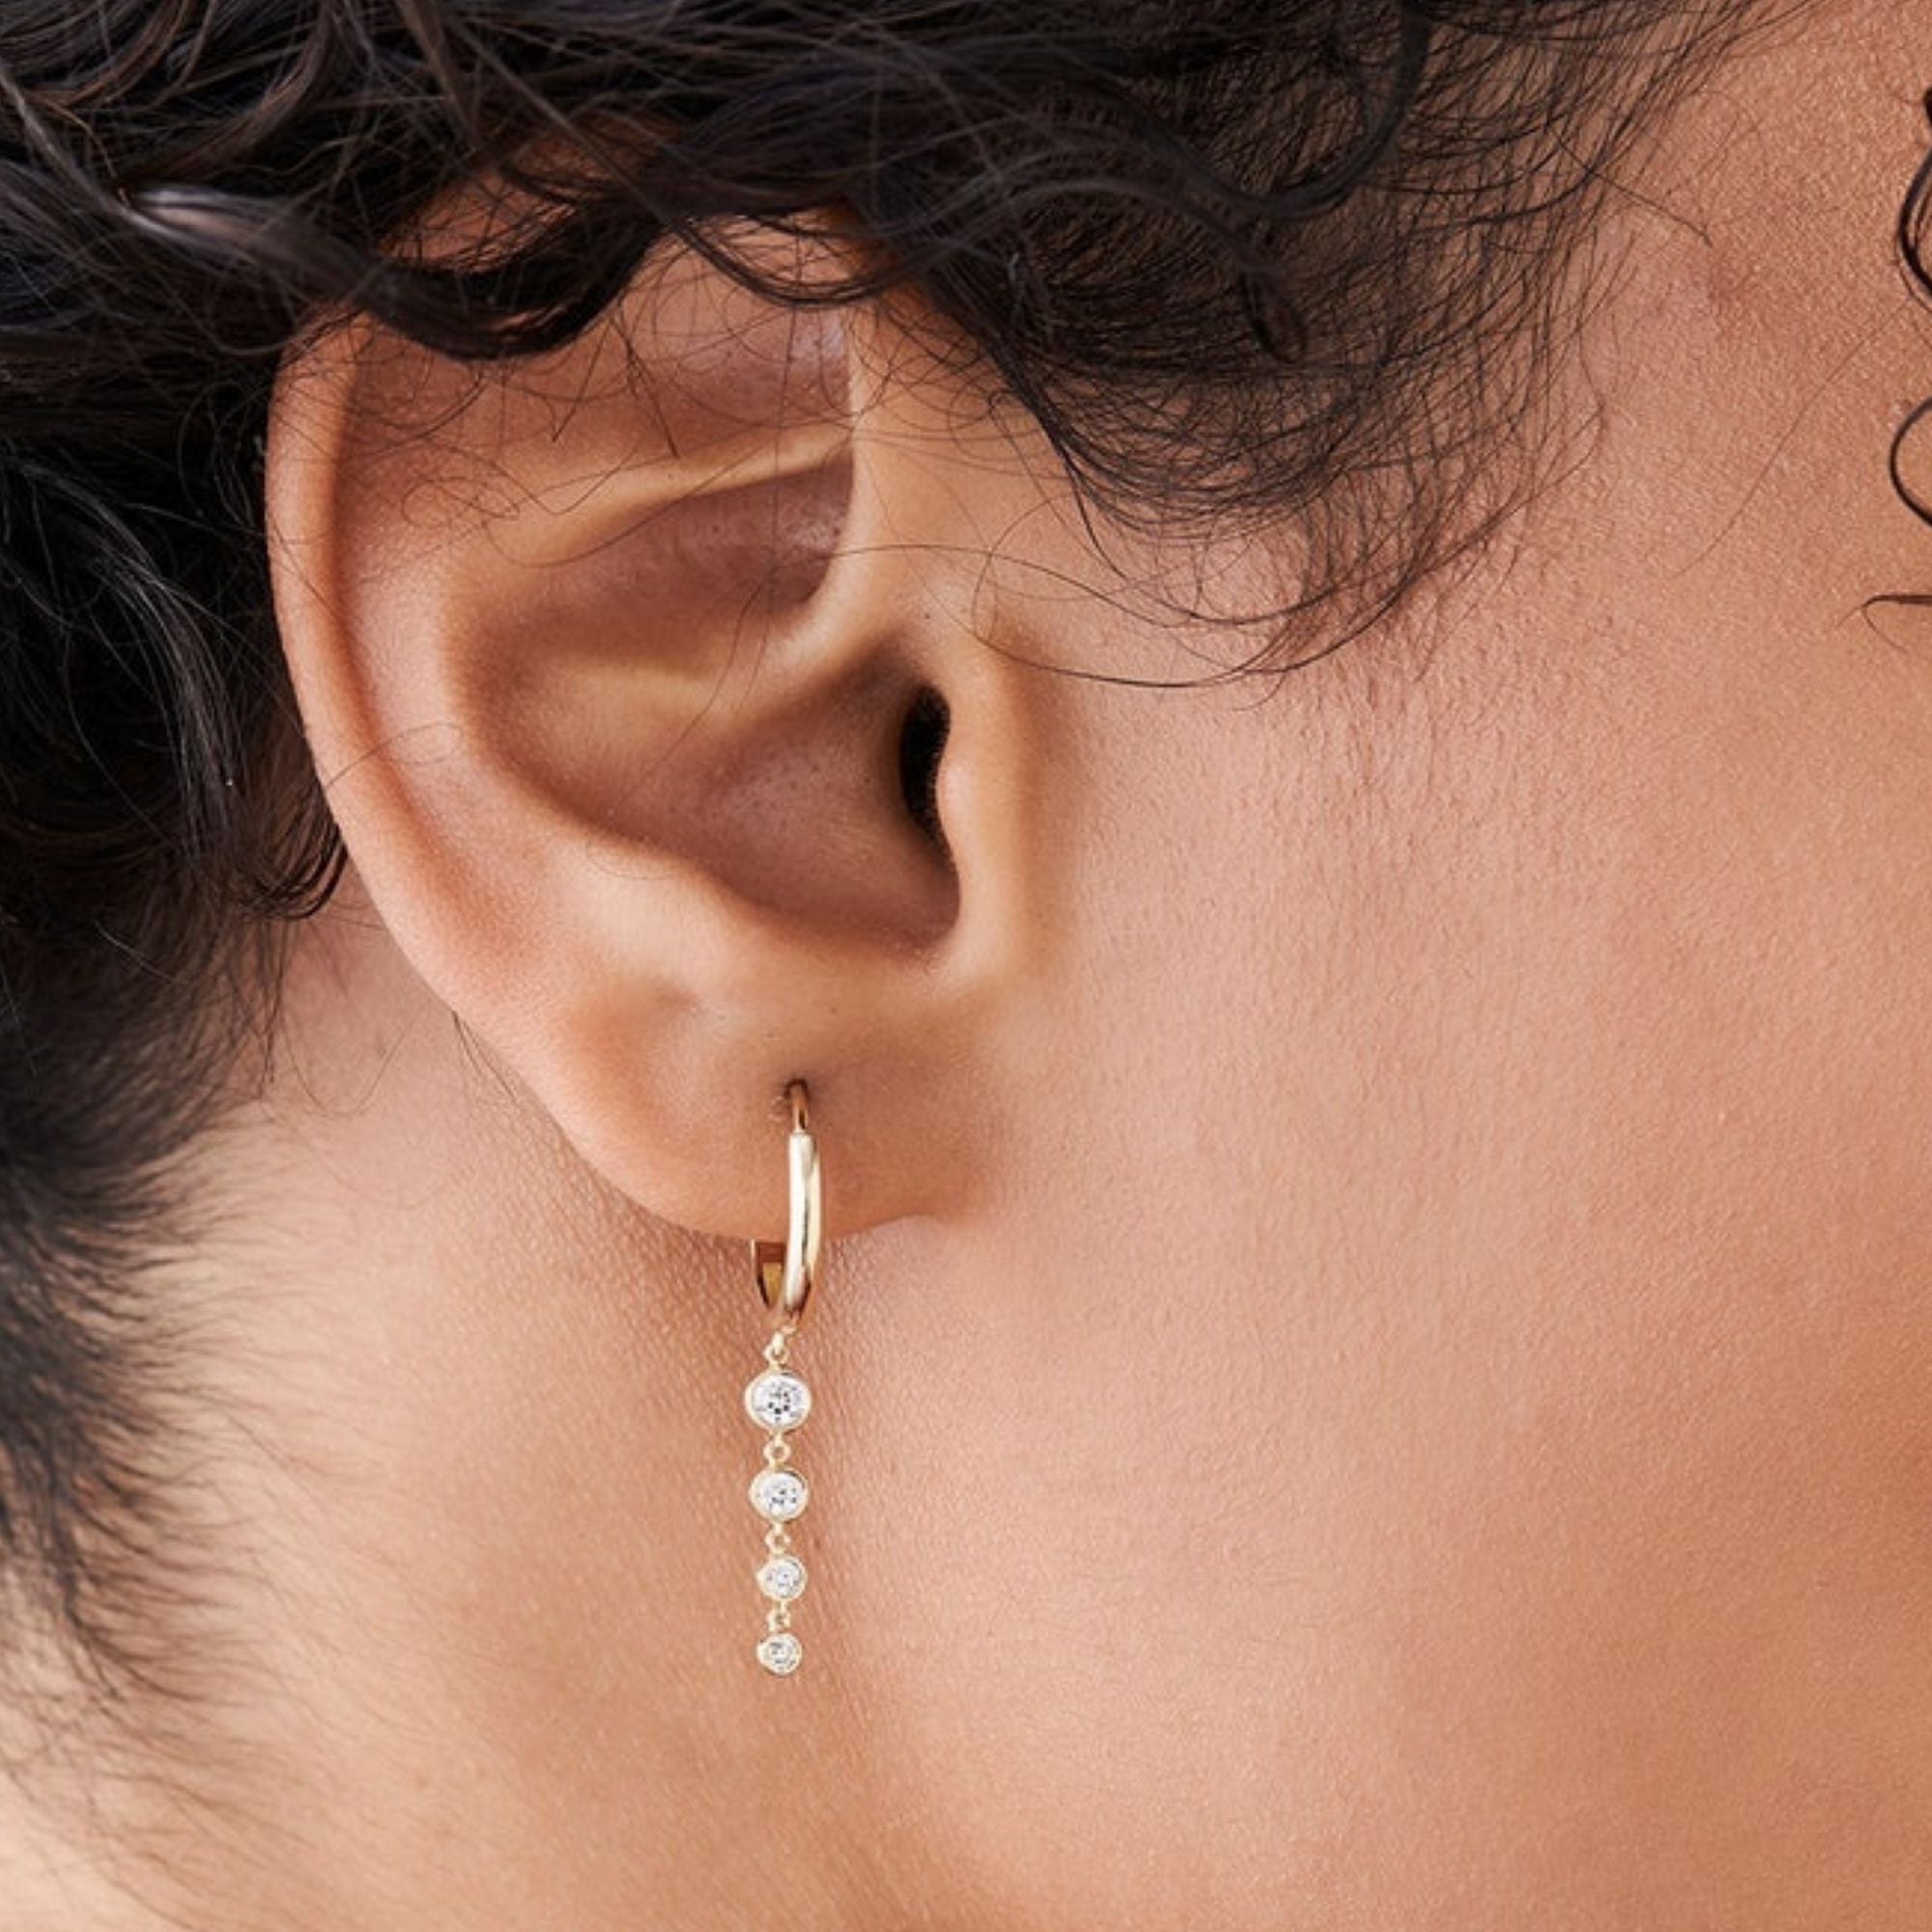 Circinus Hoop Earrings with 4 Diamond Drop